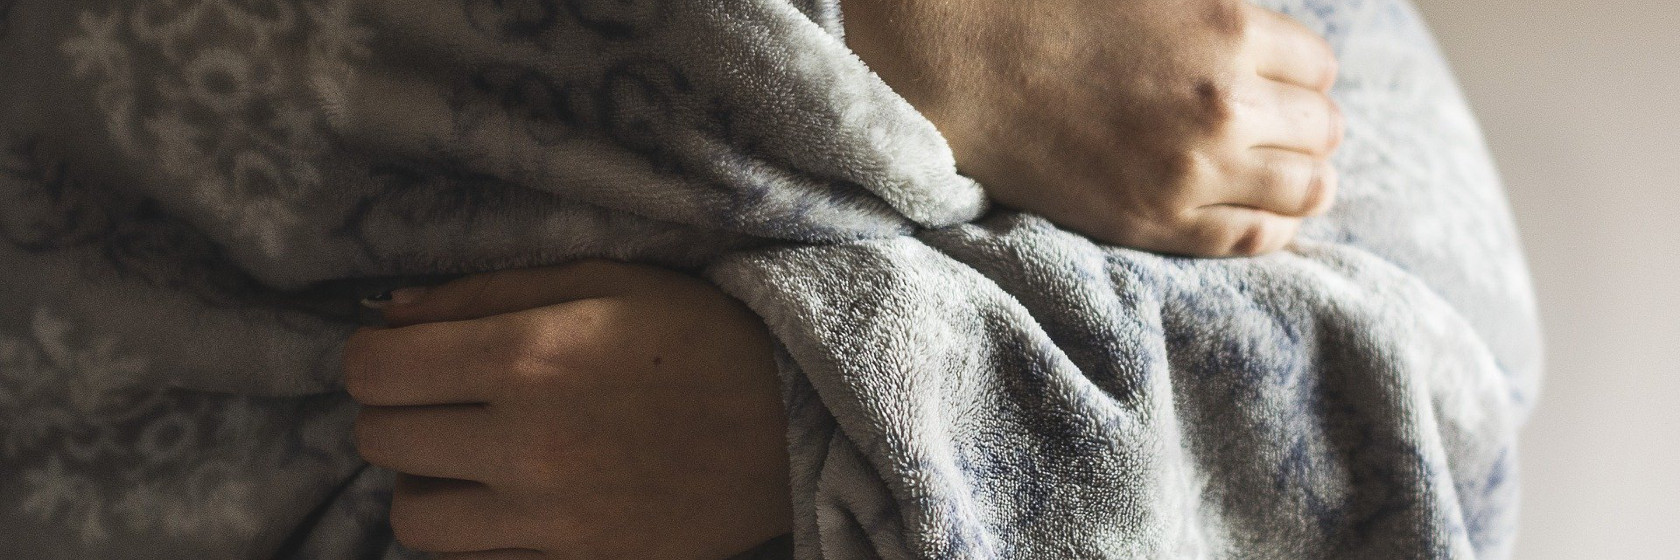 Eine Person hüllt sich in eine warme Decke.